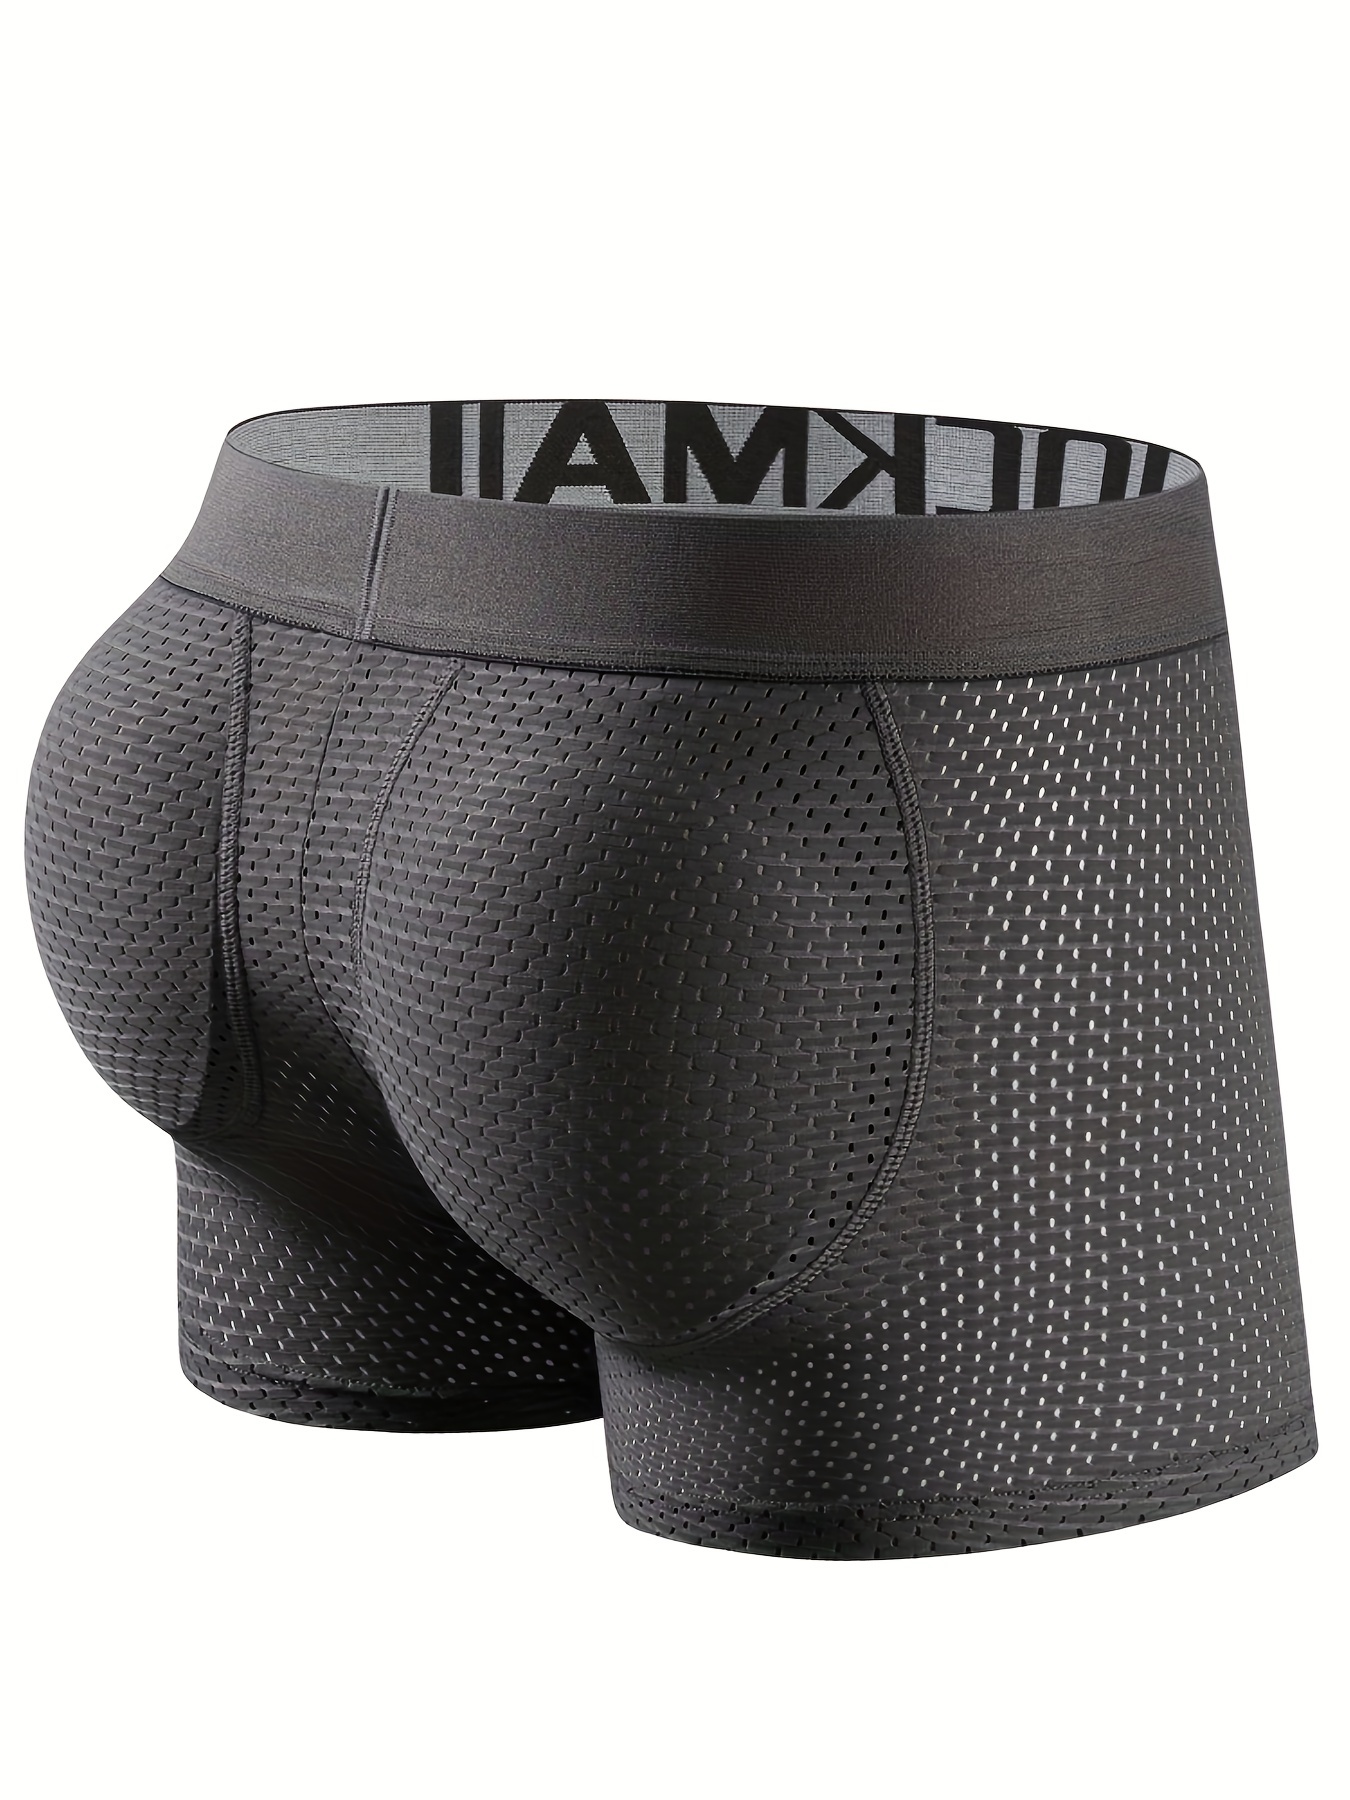 SAXX Underwear Fashion for Men